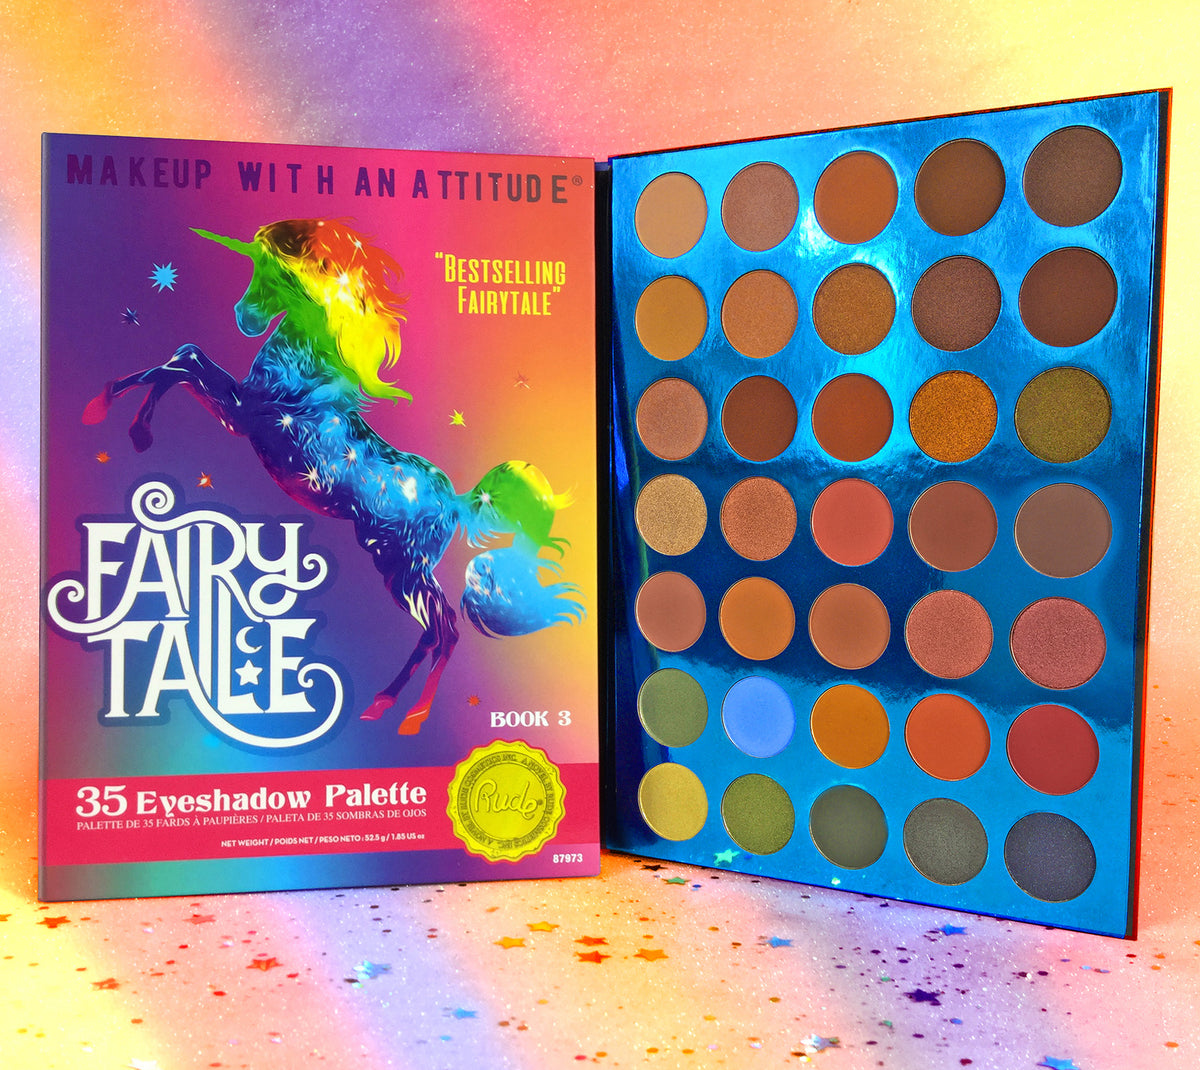 Fairy Tale 35 Eyeshadow Palette - Book 3